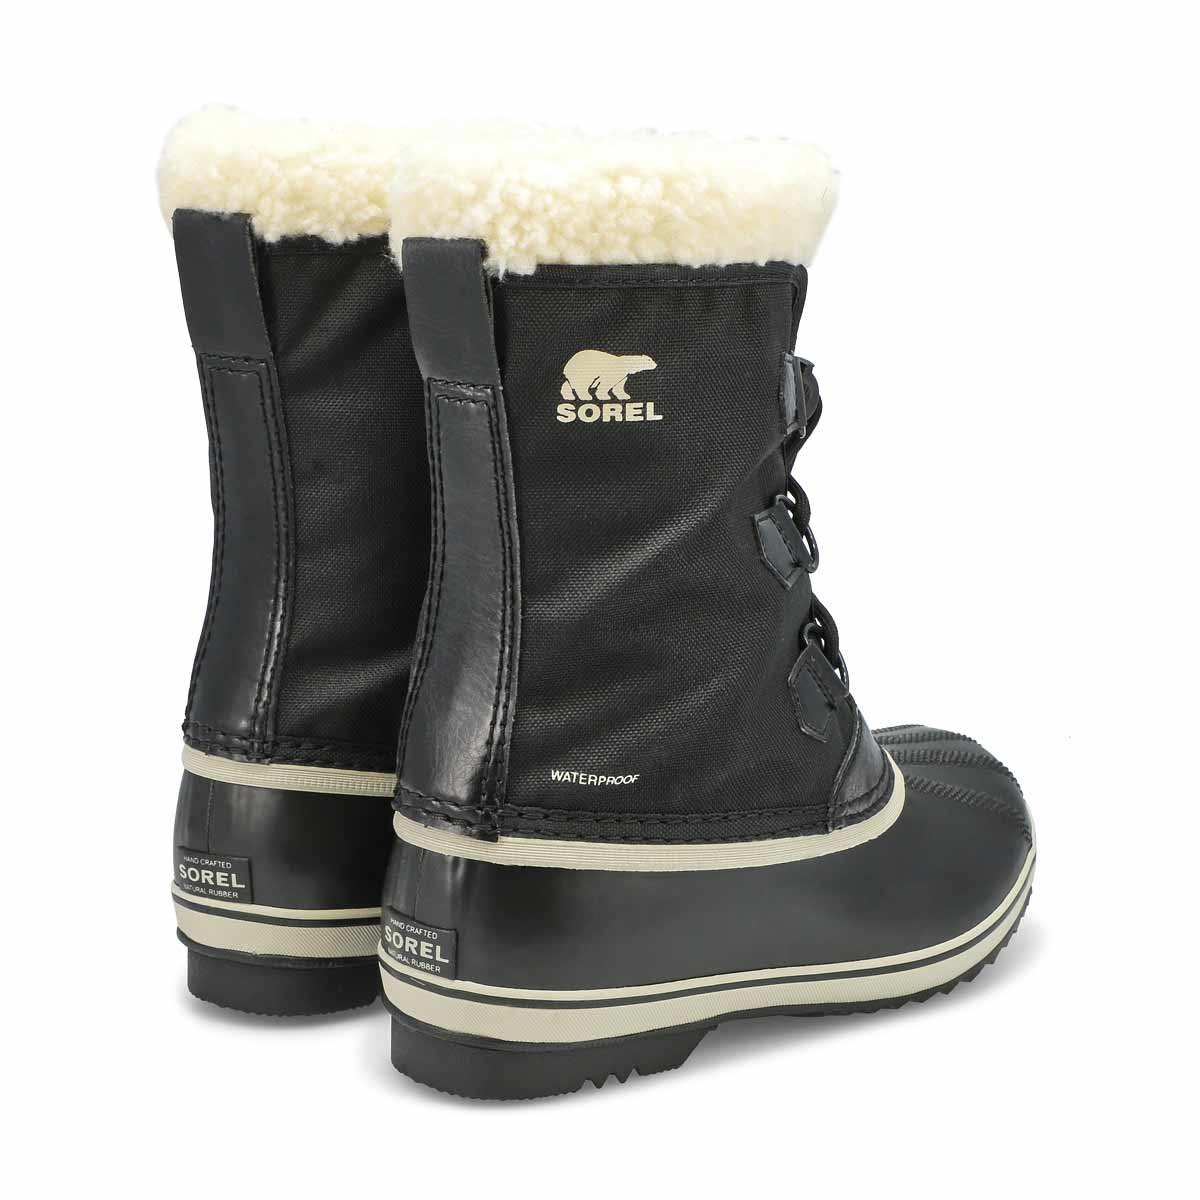 Kids' Yoot Pac Waterproof Snow Boot - Black